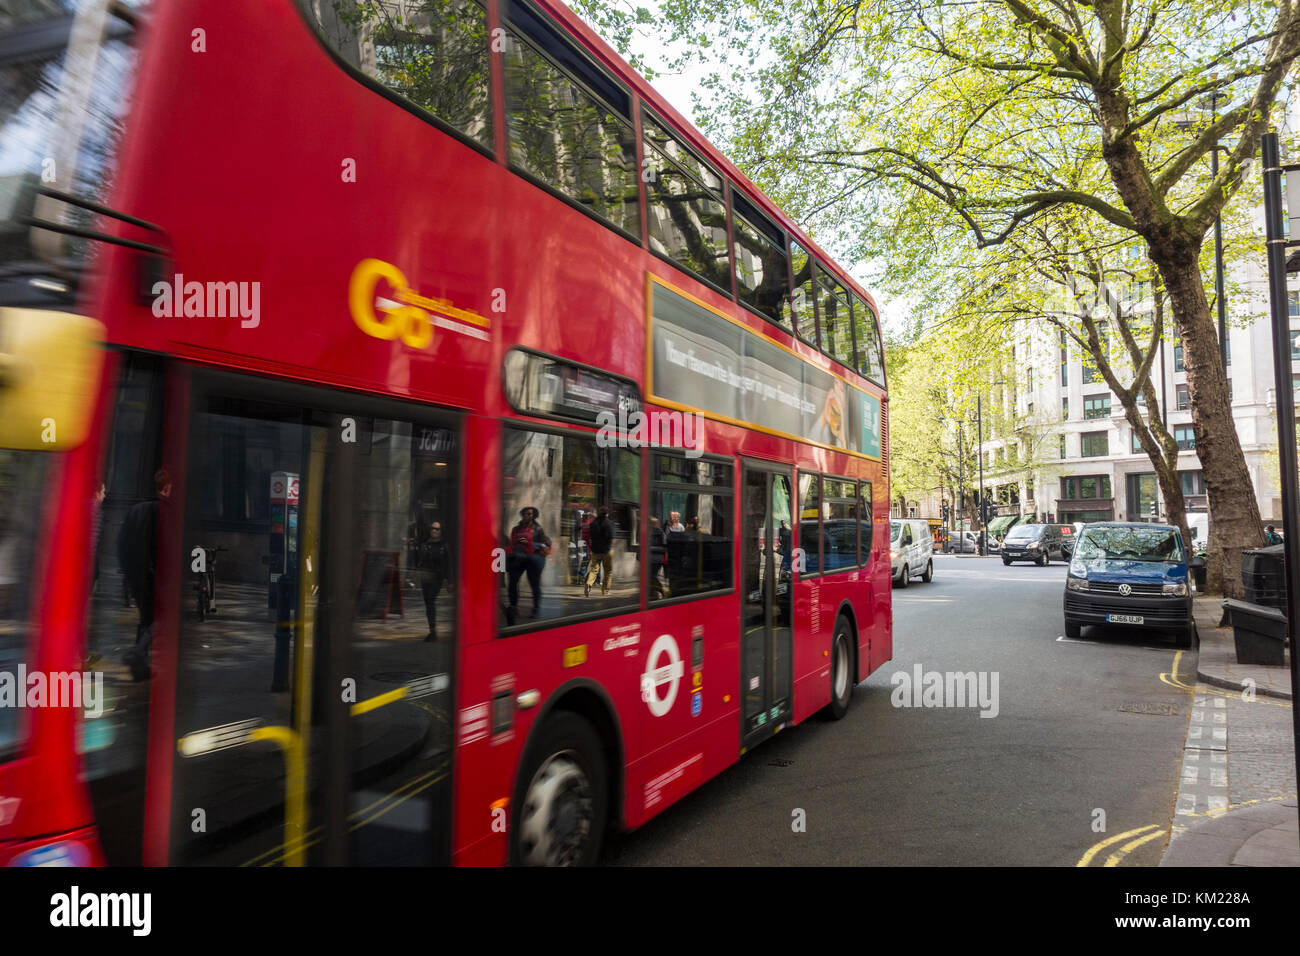 Réflexions de personnes sur la chaussée dans un bus red London, UK Banque D'Images